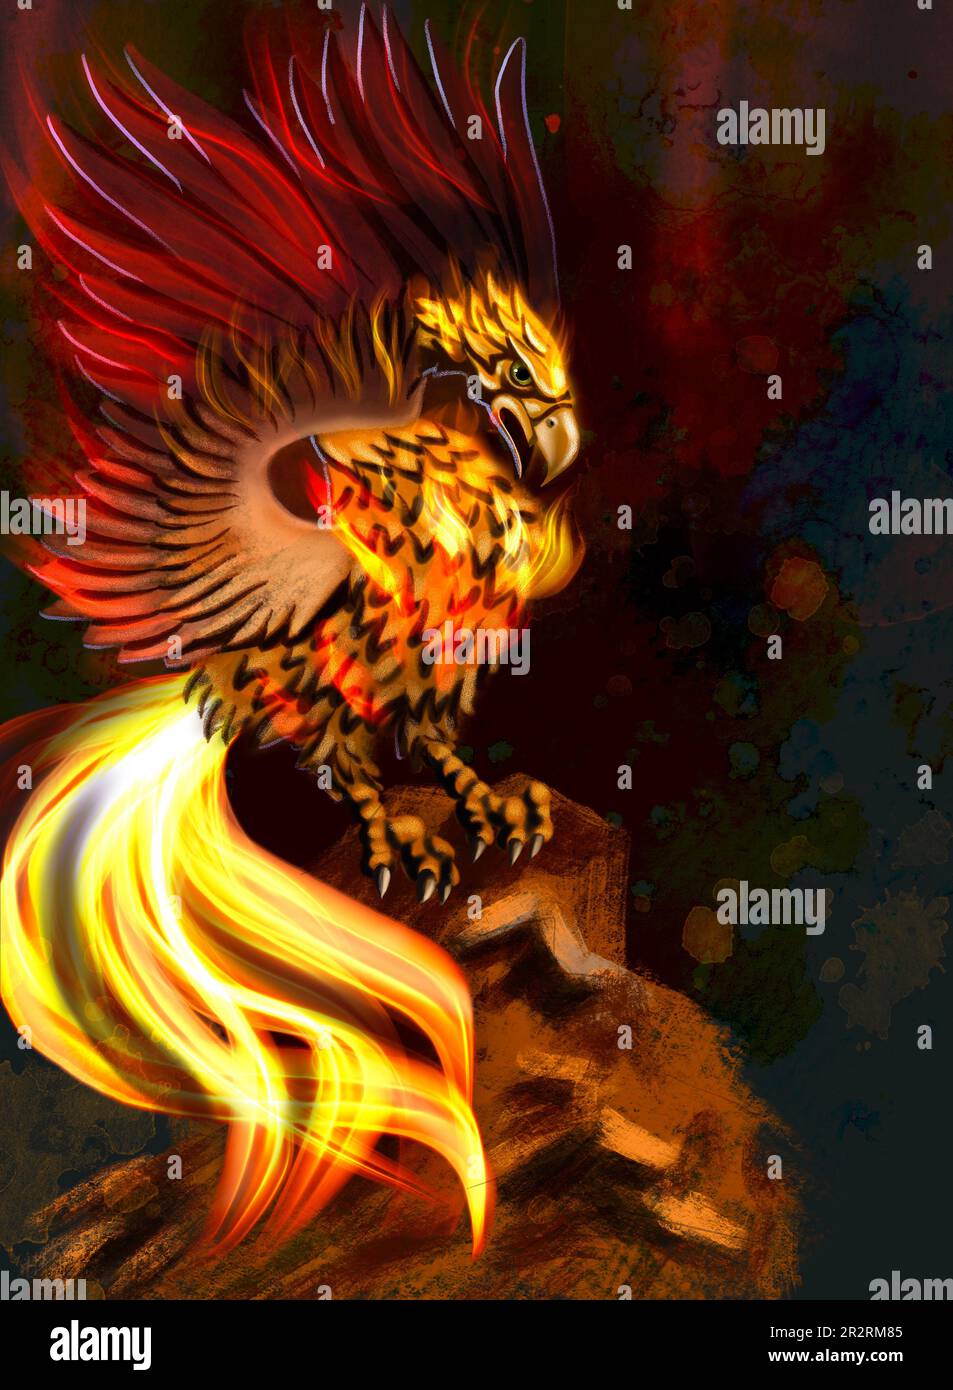 Illustration numérique - un oiseau mythique de Phoenix, renaissant du feu et couvert de flammes de feu. Banque D'Images